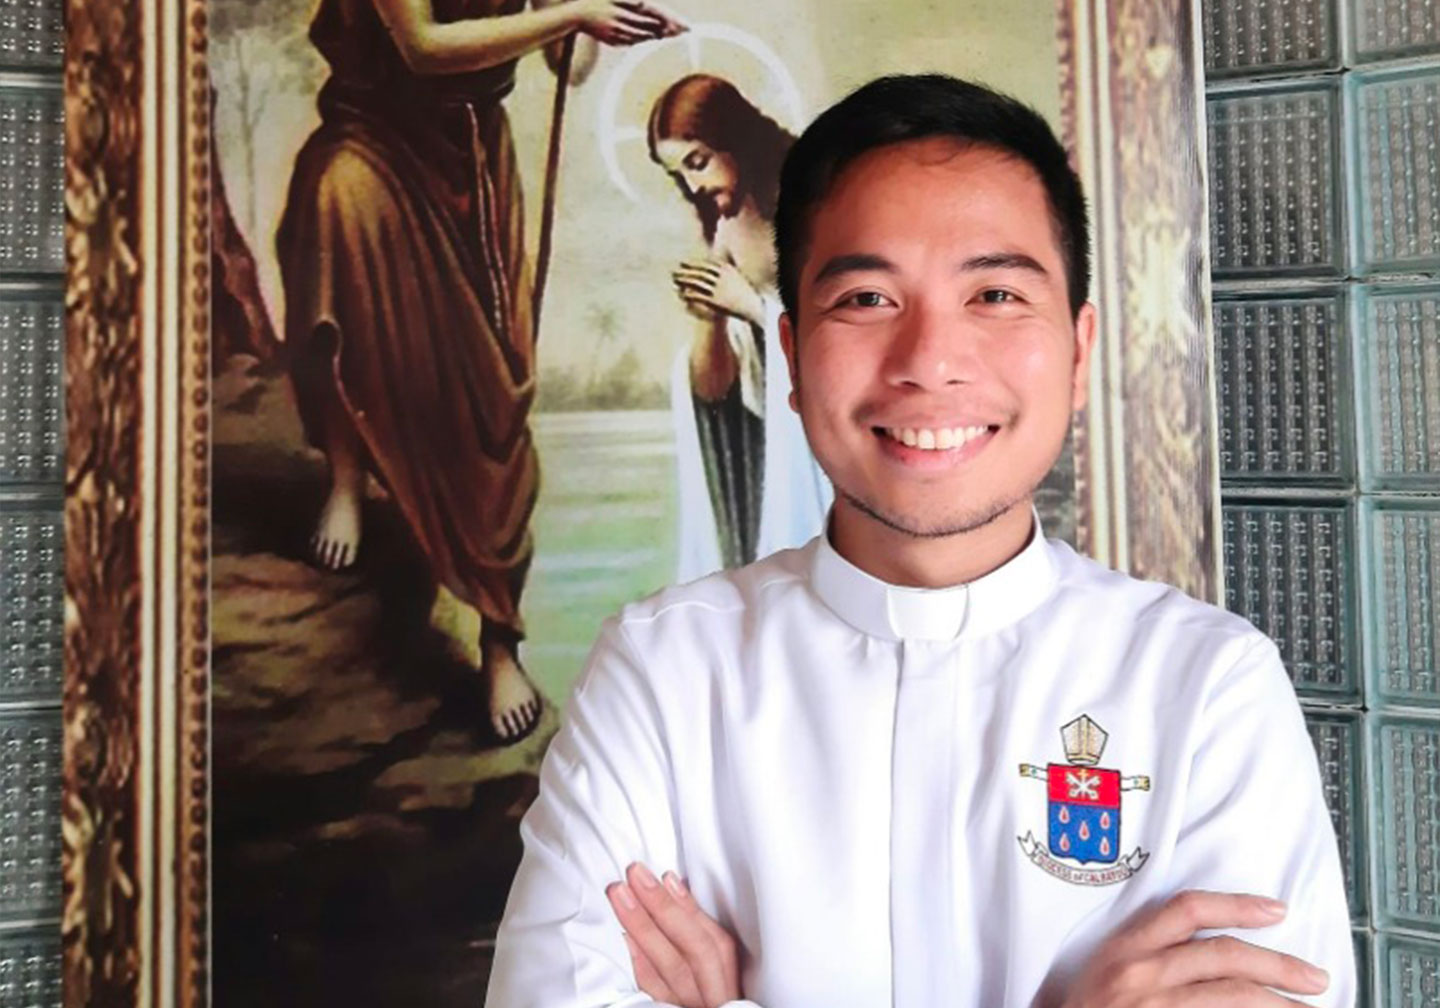 アーロン・ペニャランダ - CARF奨学生、フィリピン人司祭アーロン・ペニャランダの司牧の旅。フィリピン人司祭